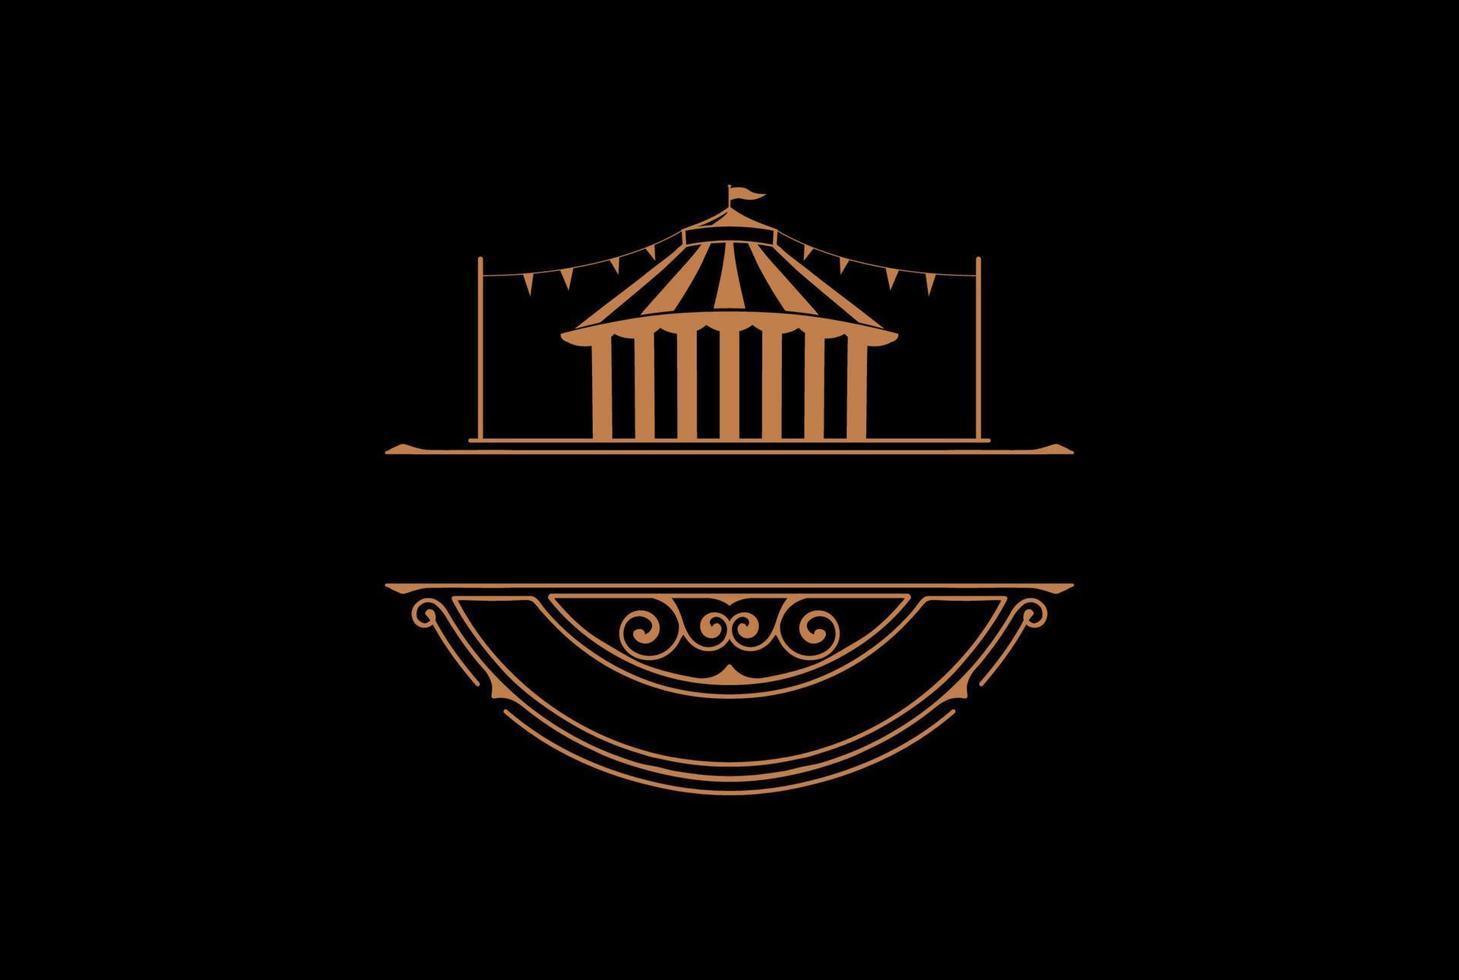 vintage retro circo carpa de circo insignia etiqueta emblema pegatina logotipo diseño vector